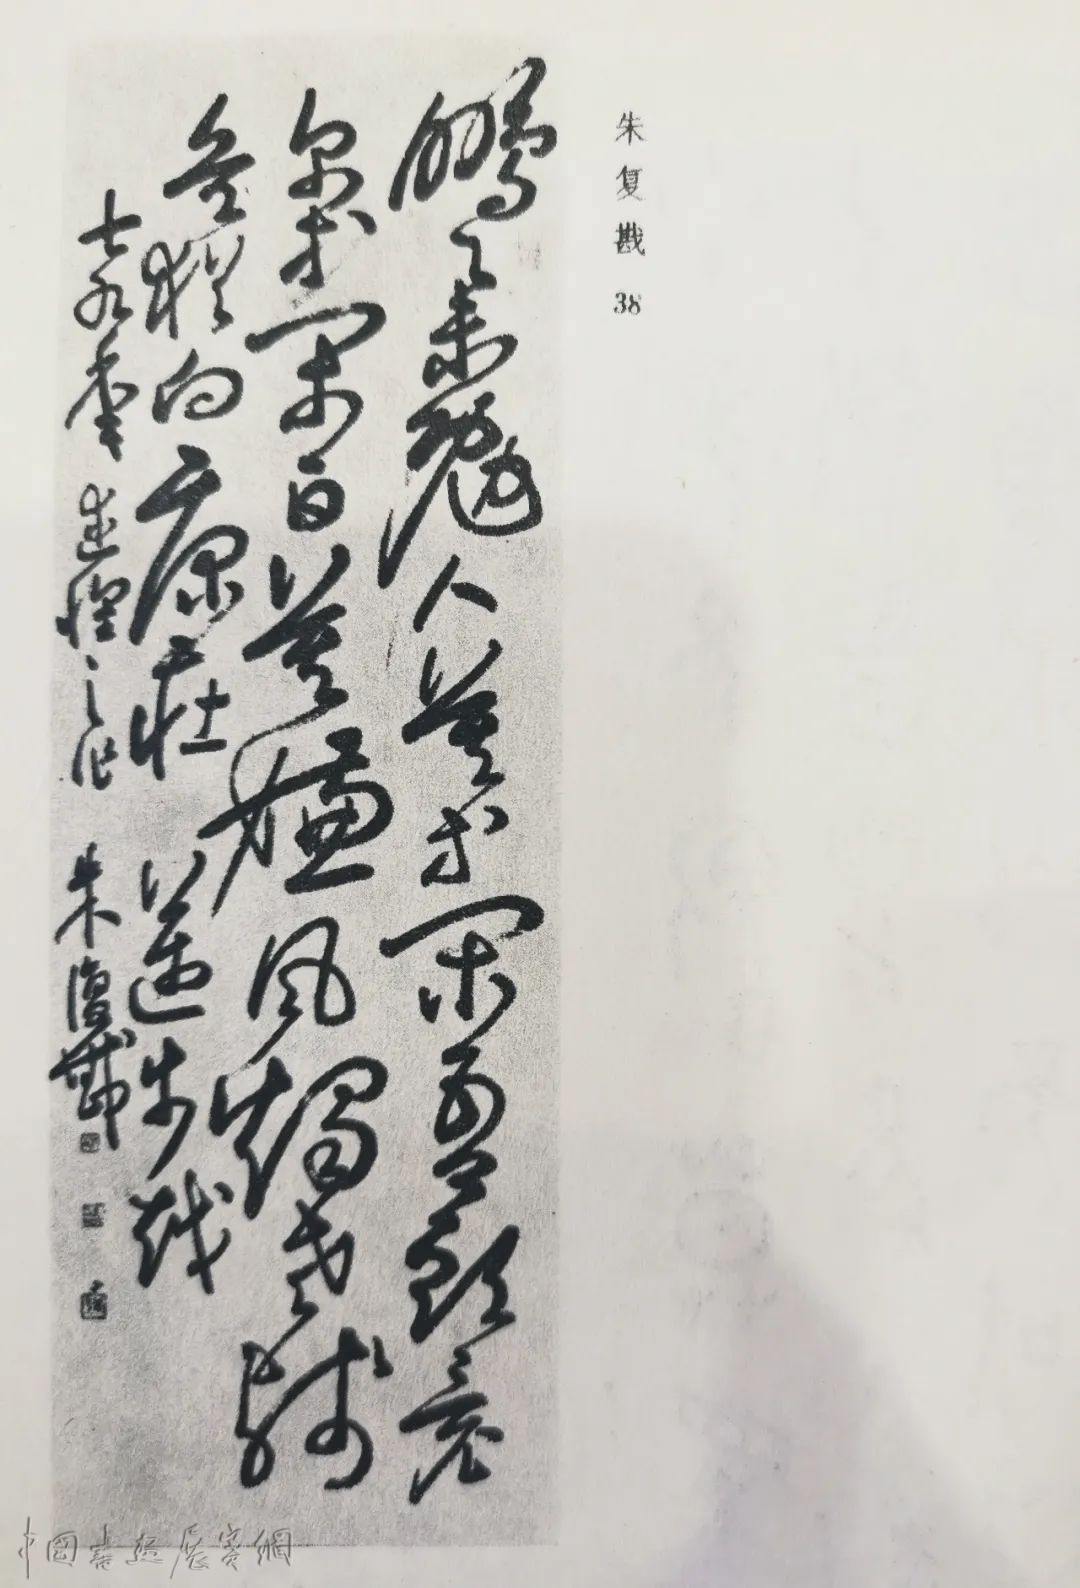 《书法艺术的春天》——中国书法家协会顾问聂成文口述回忆全国第一届书法篆刻作品展由来